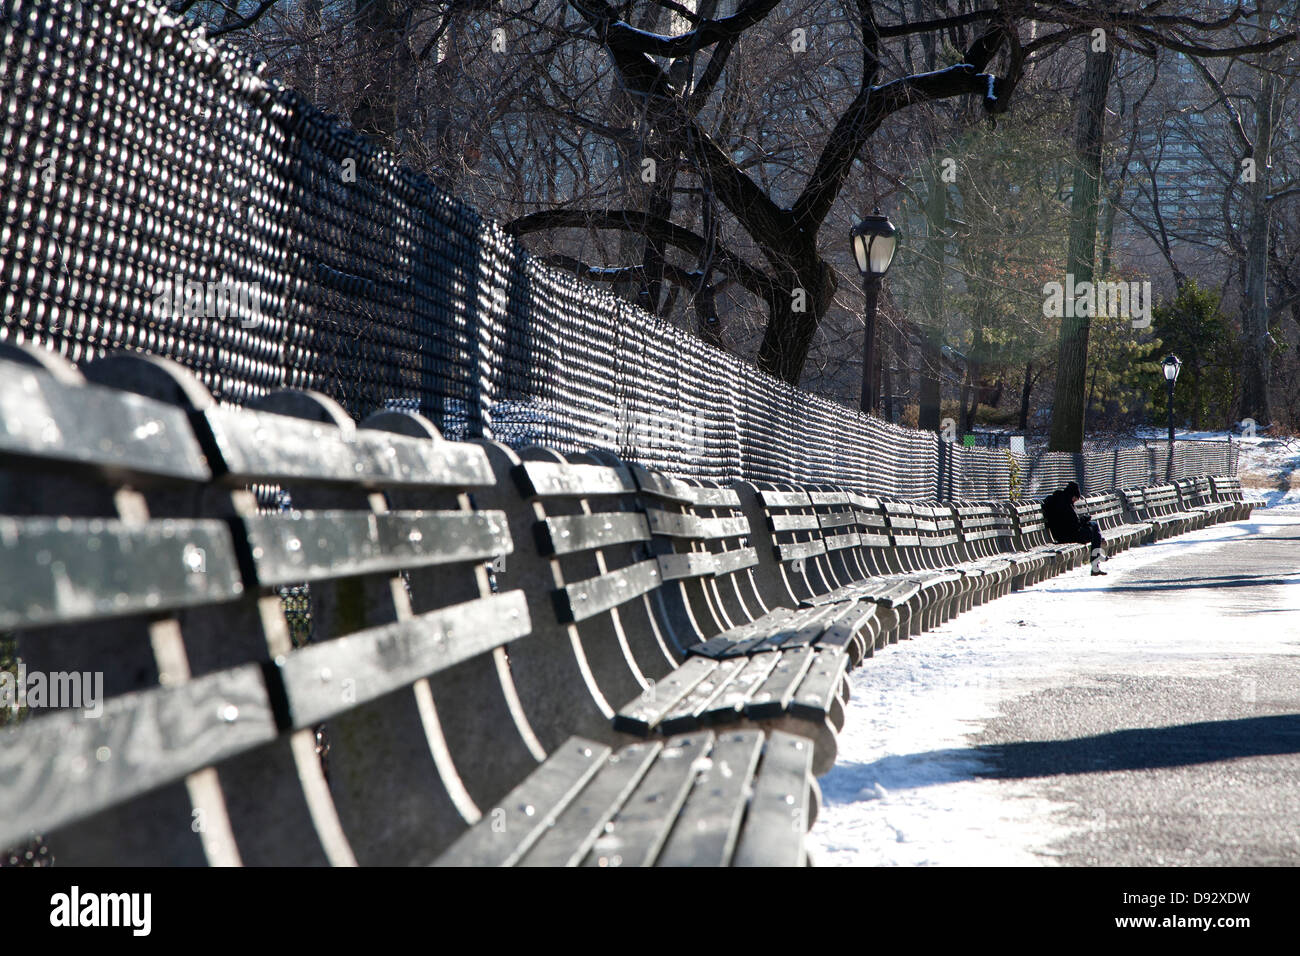 Eine entfernte Person sitzt auf einem der vielen Parkbänke in einem Park im winter Stockfoto